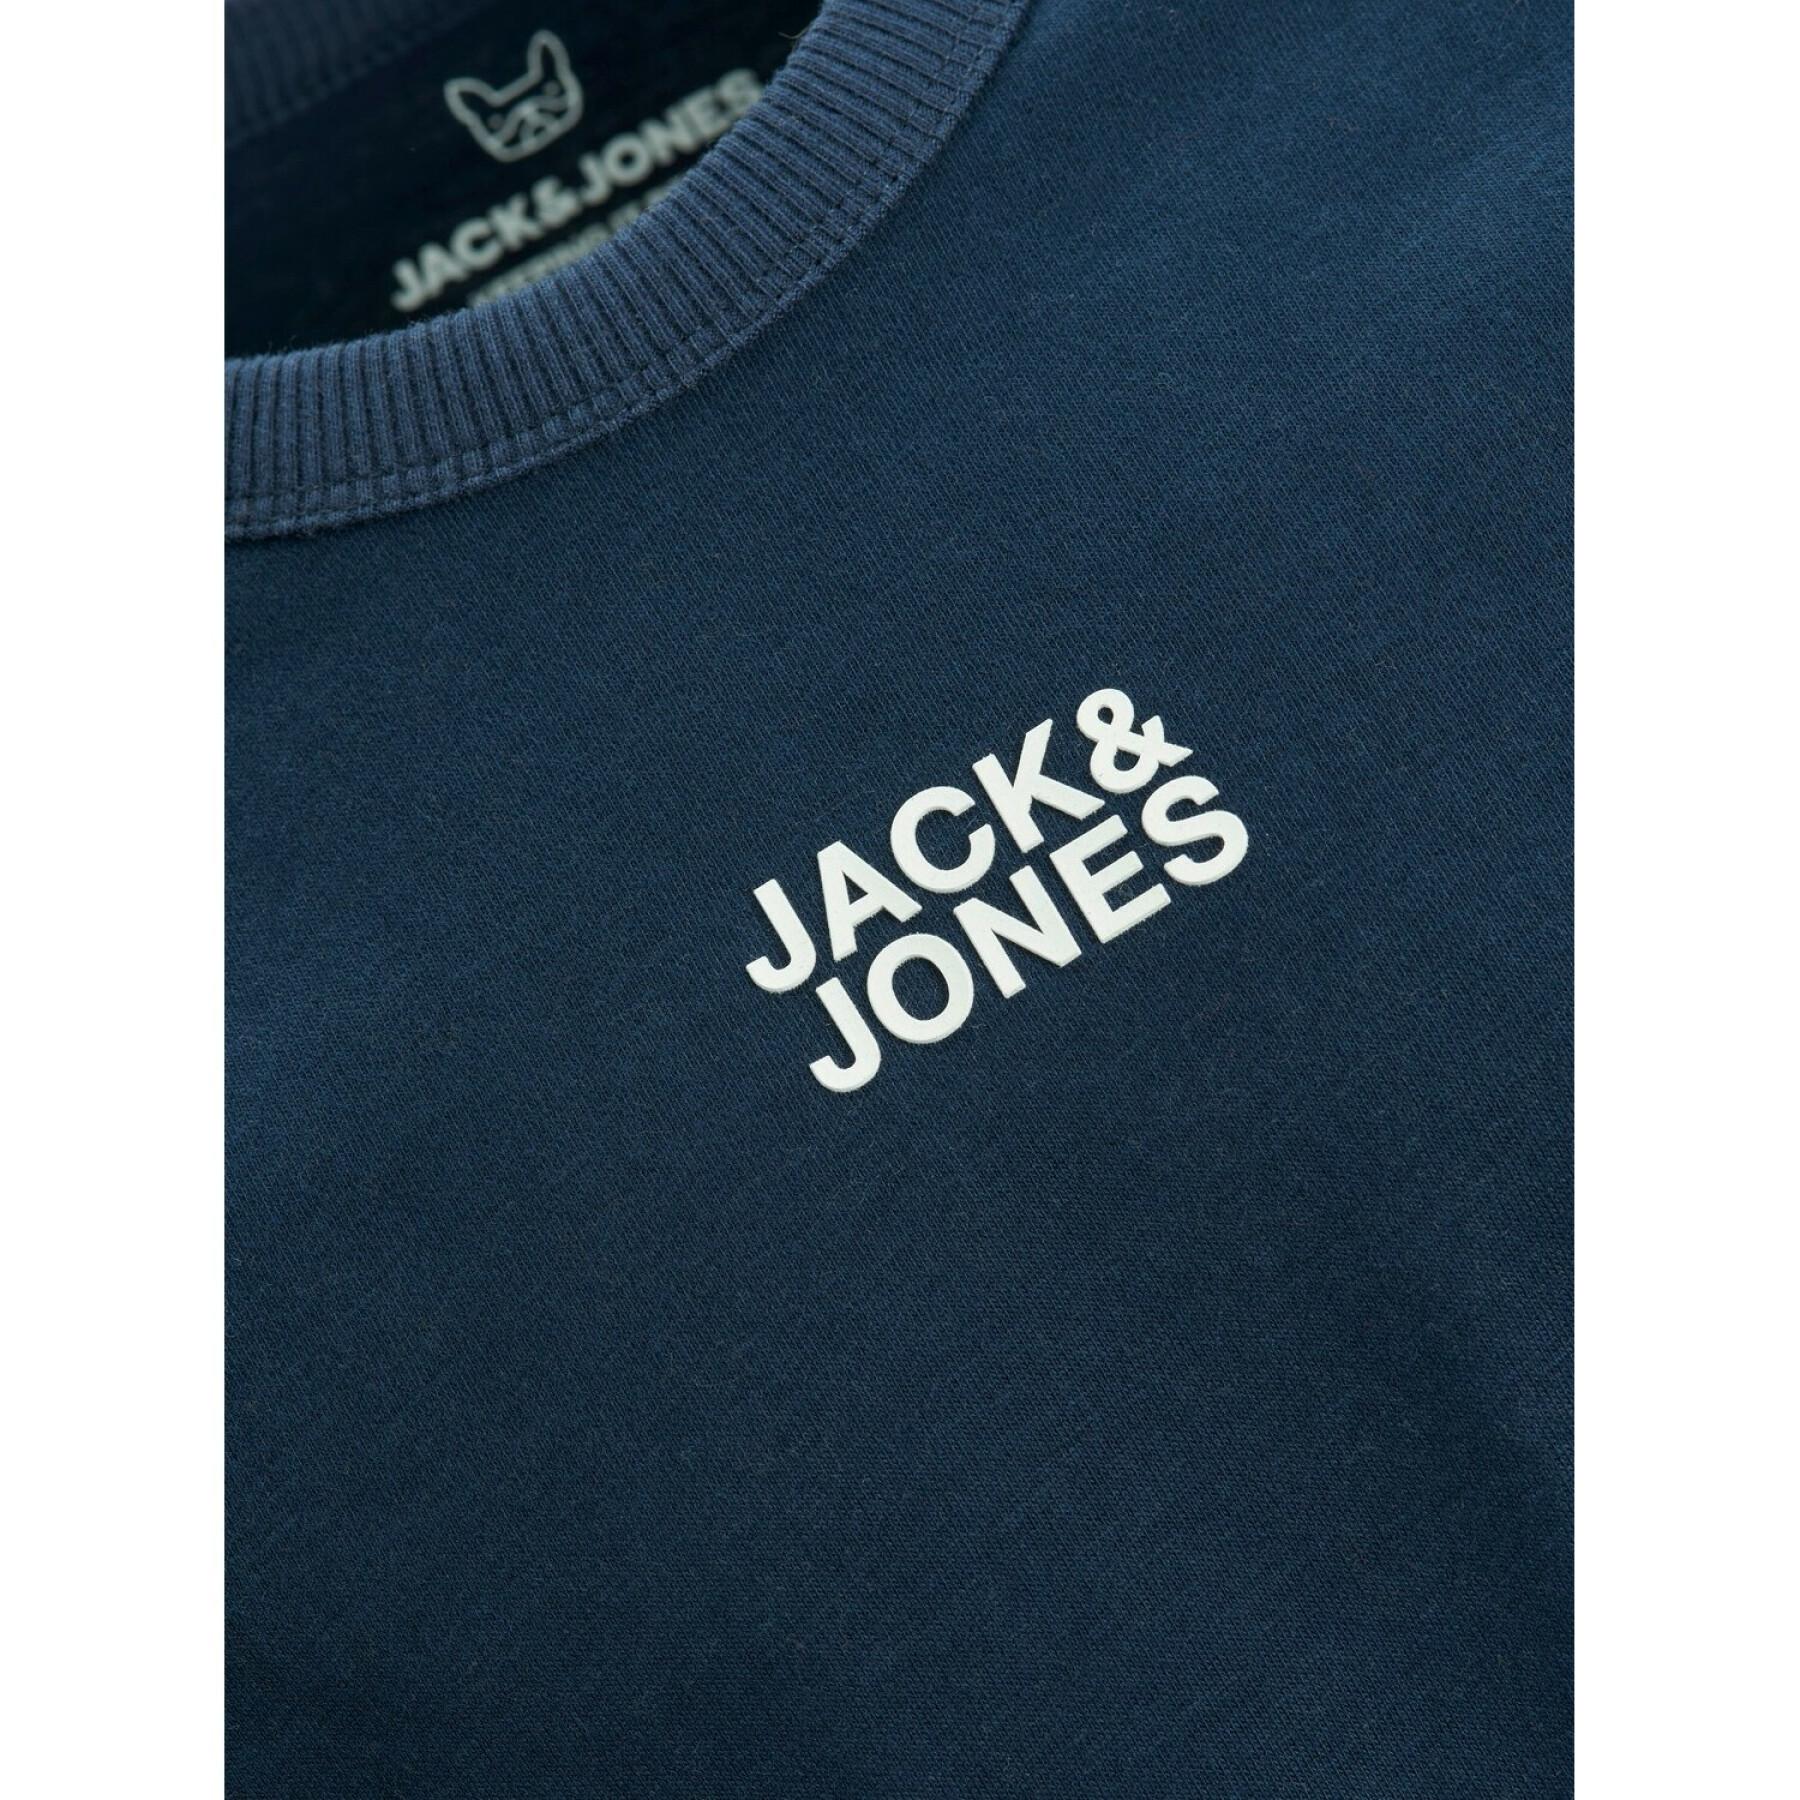 T-shirt manches longues enfant Jack & Jones Classic